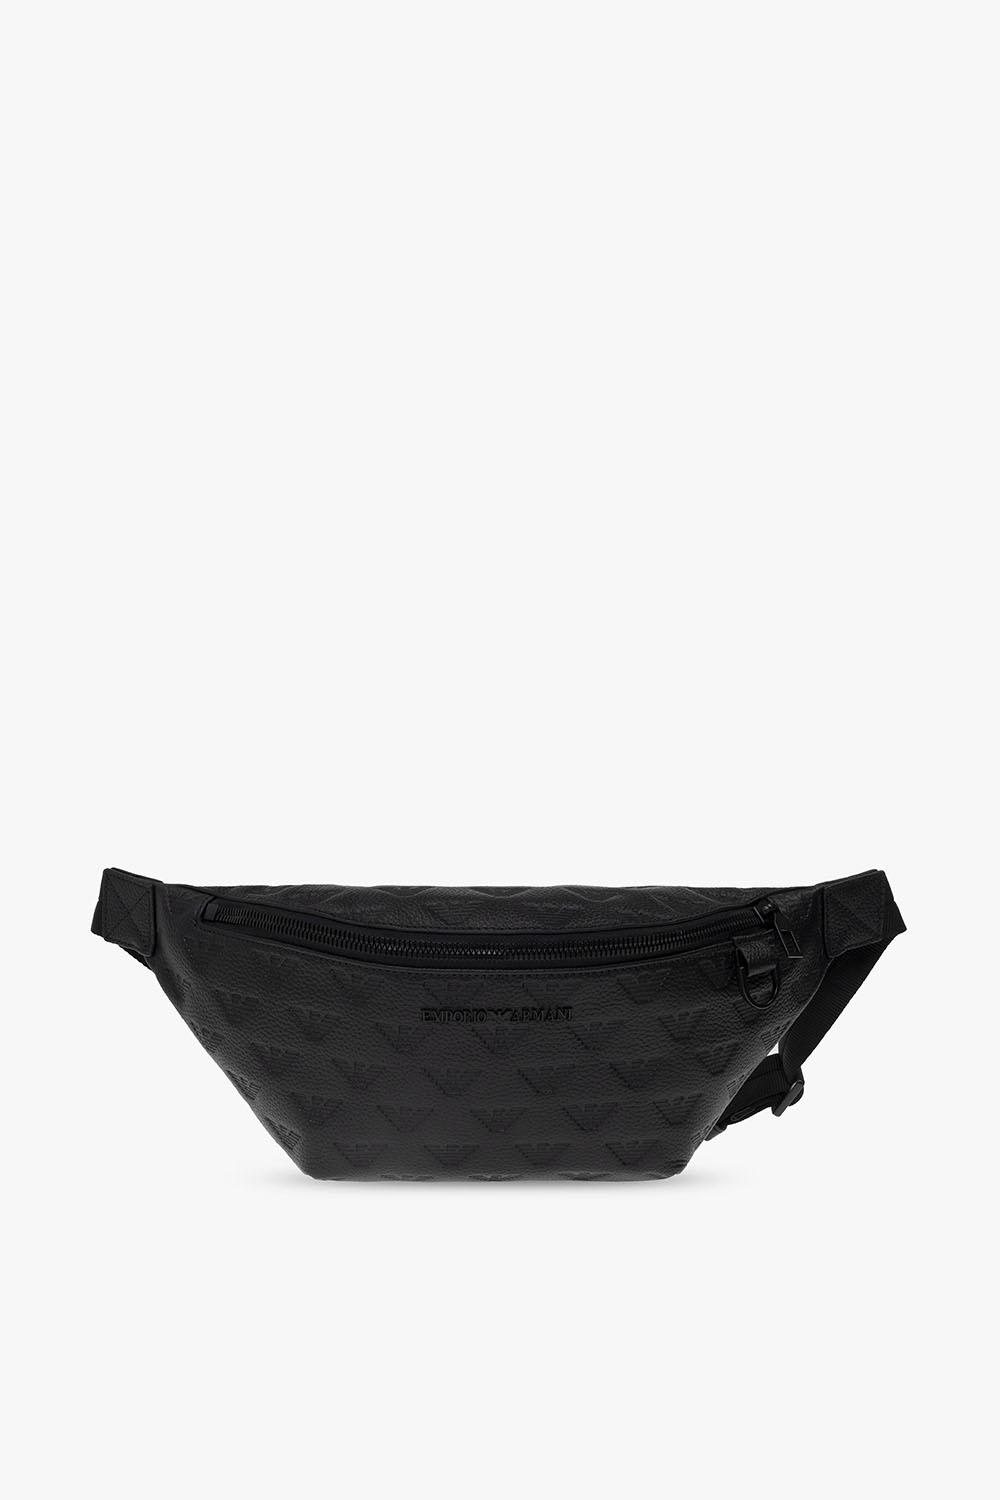 Emporio Armani Leather Belt Bag In Nero